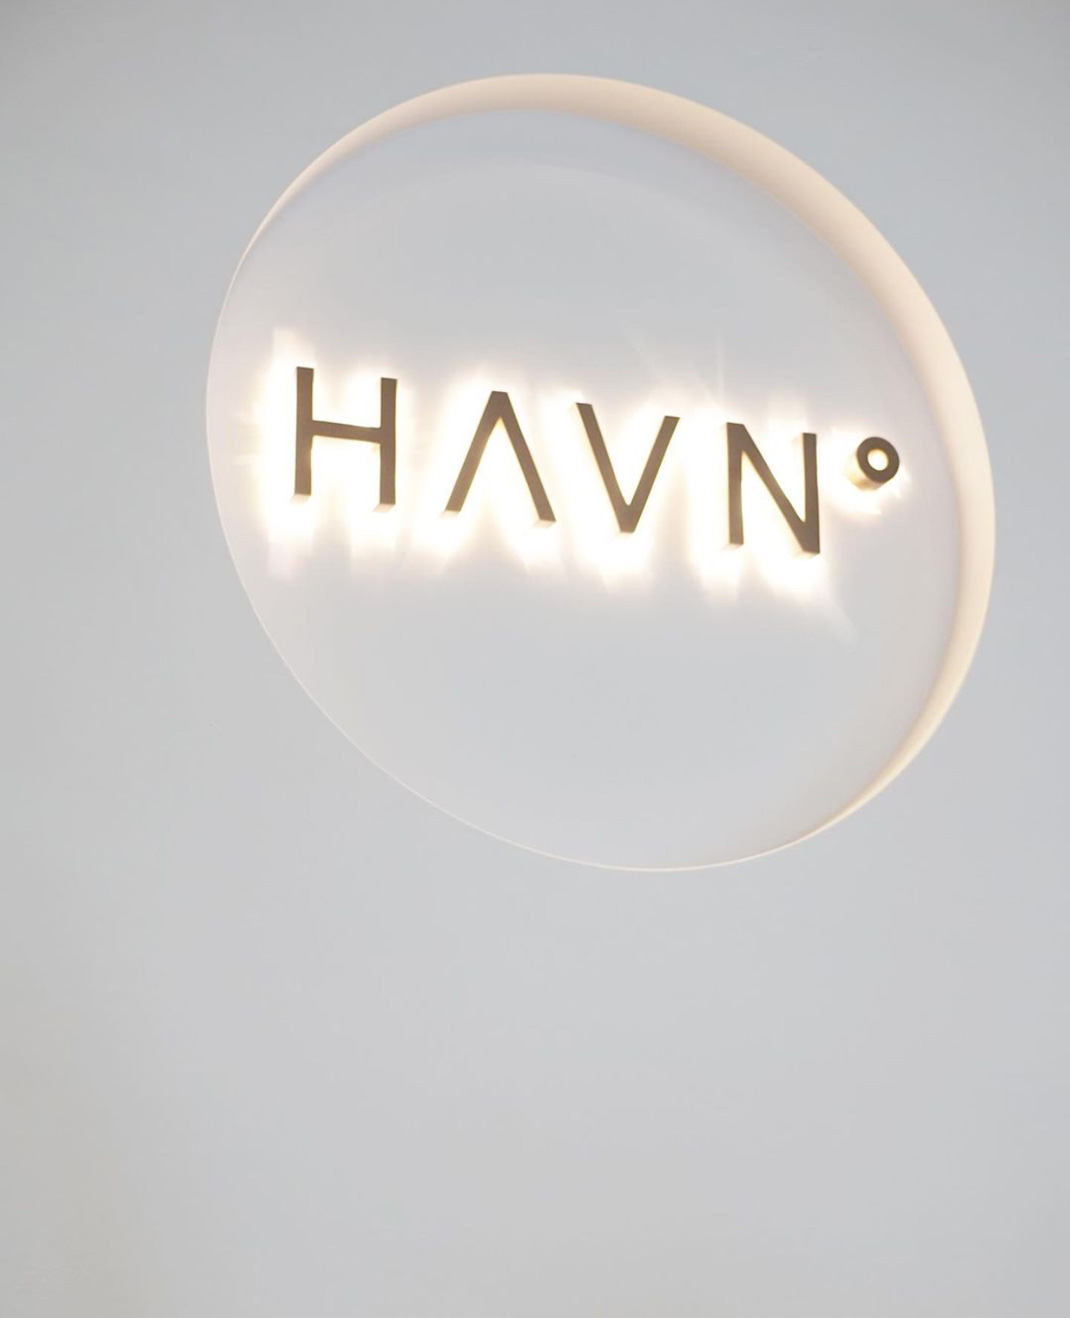 咖啡店HAVN COFFEE 香港 咖啡店 logo设计 vi设计 空间设计